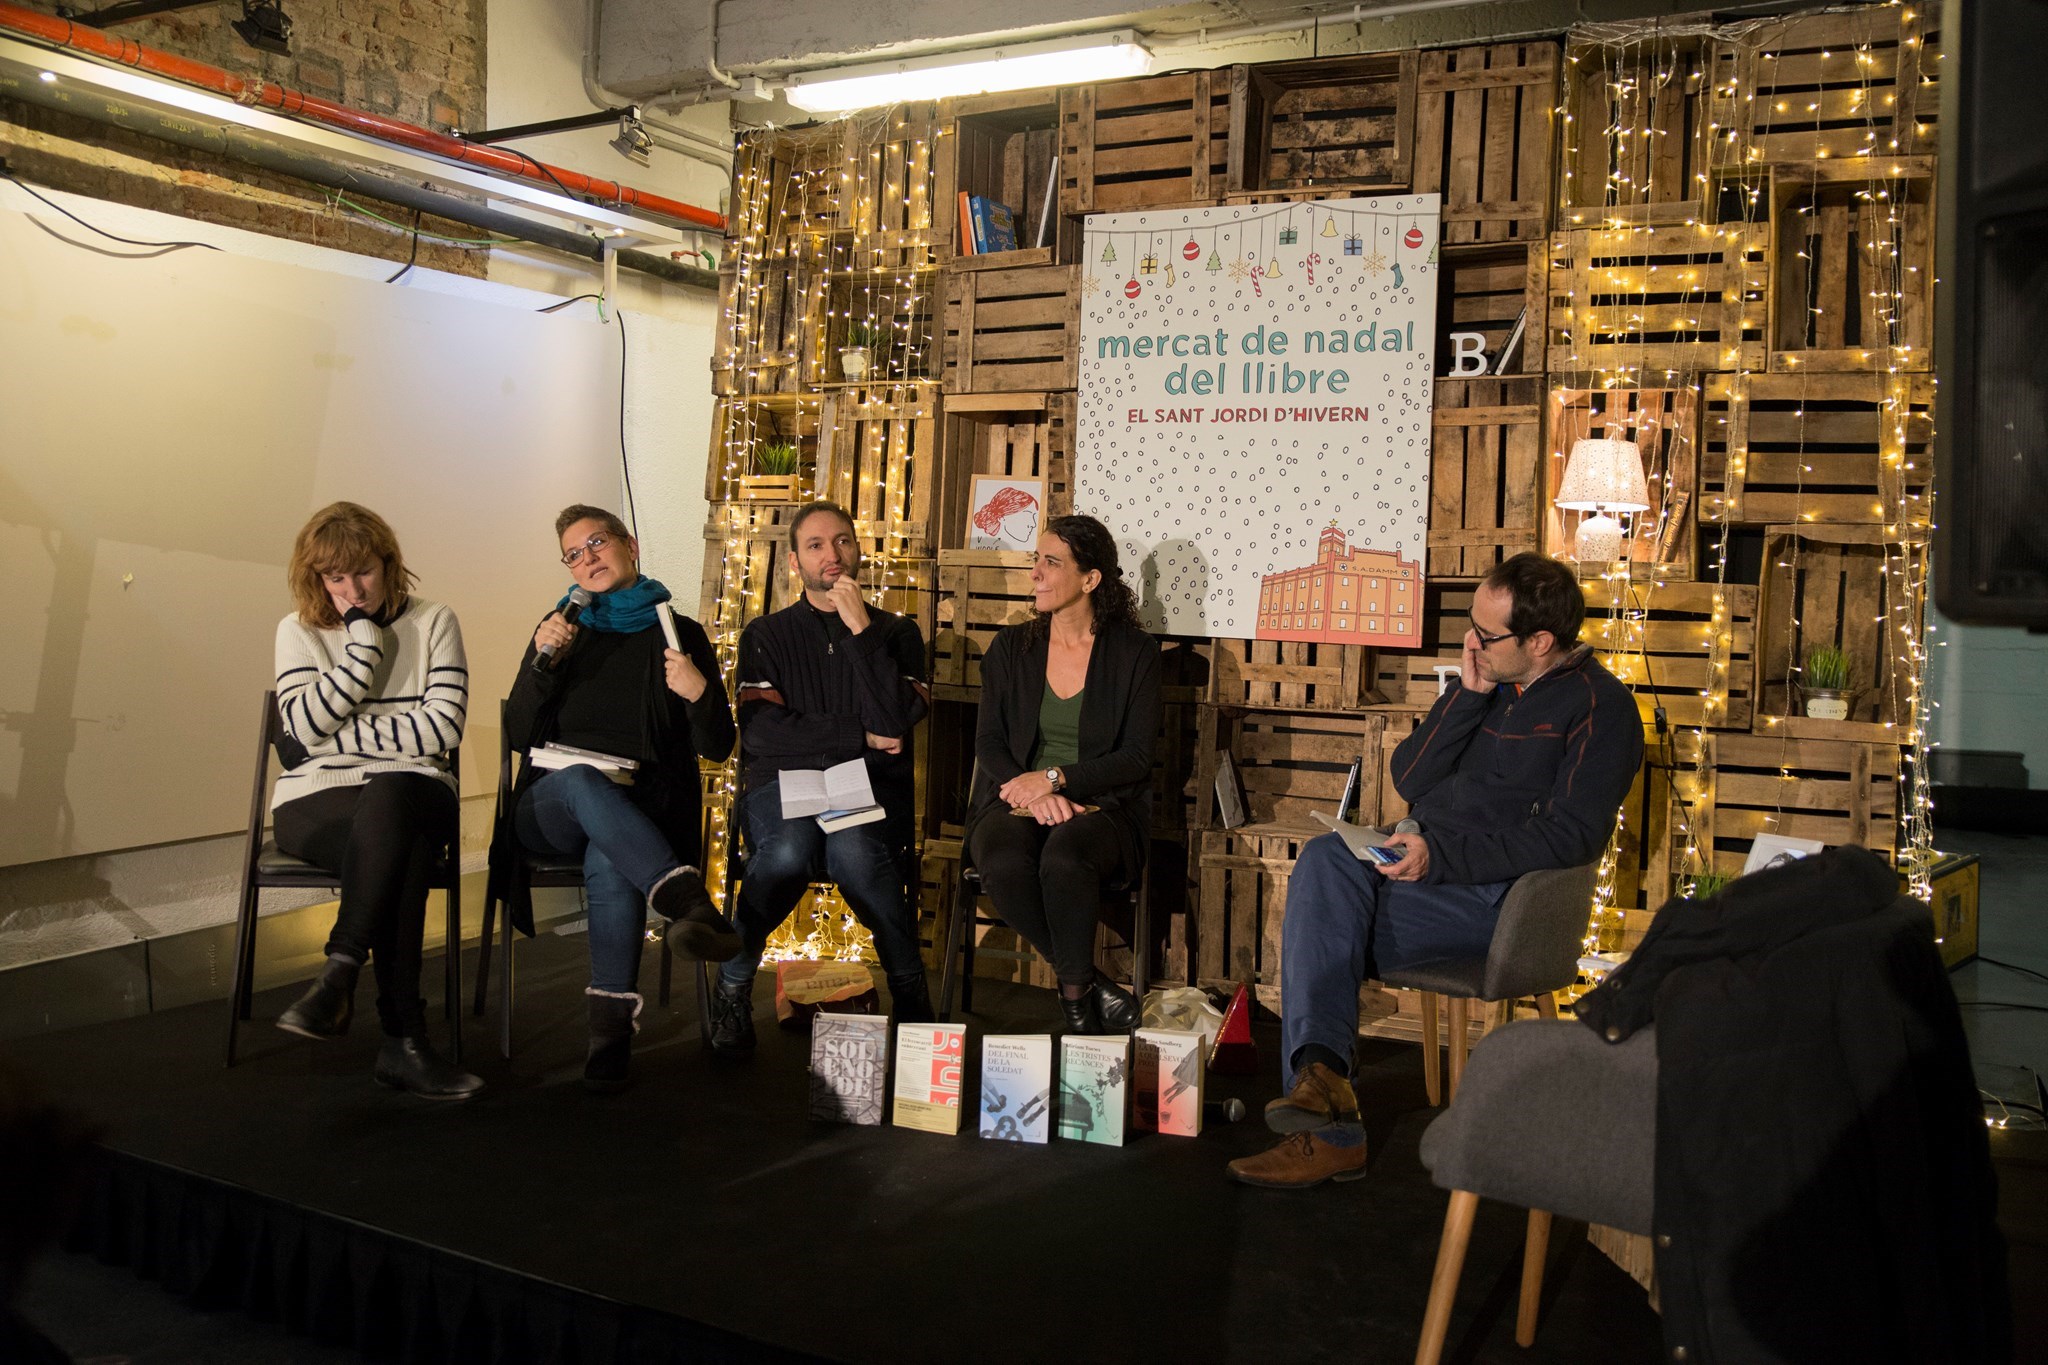  Eugènia Broggi, Laura Huerga, Aniol Rafel, Maria Sempere, amb Bernat Puigtobella al combat d'editorials